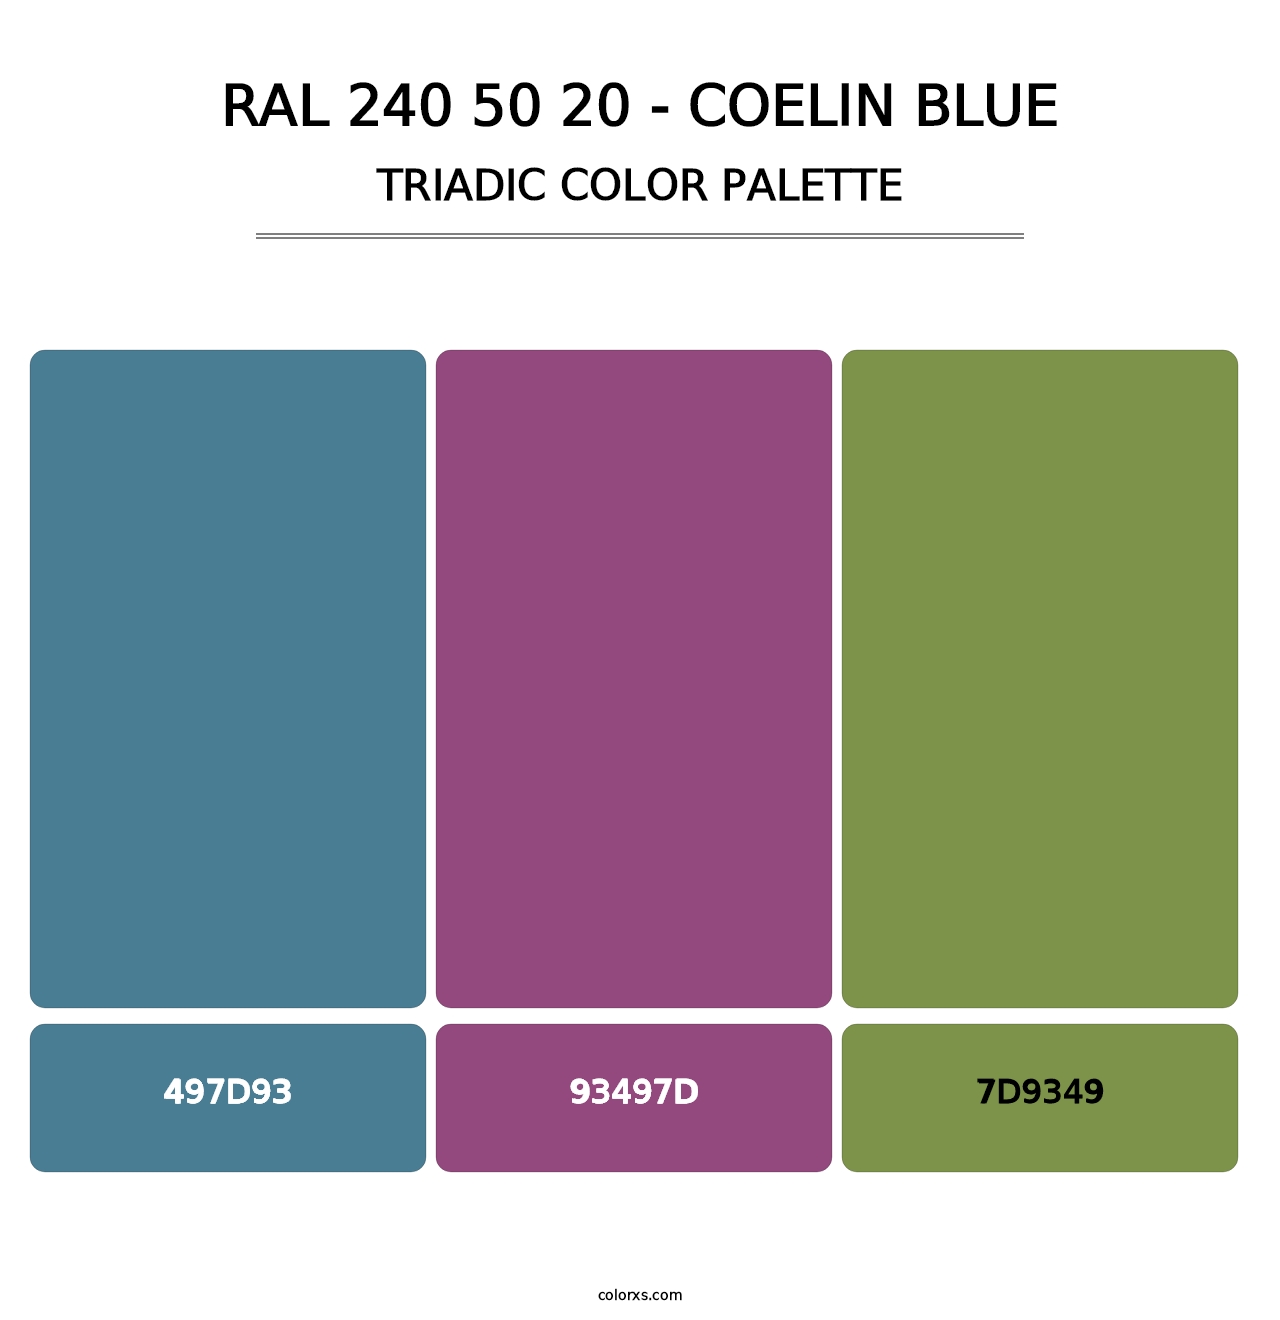 RAL 240 50 20 - Coelin Blue - Triadic Color Palette